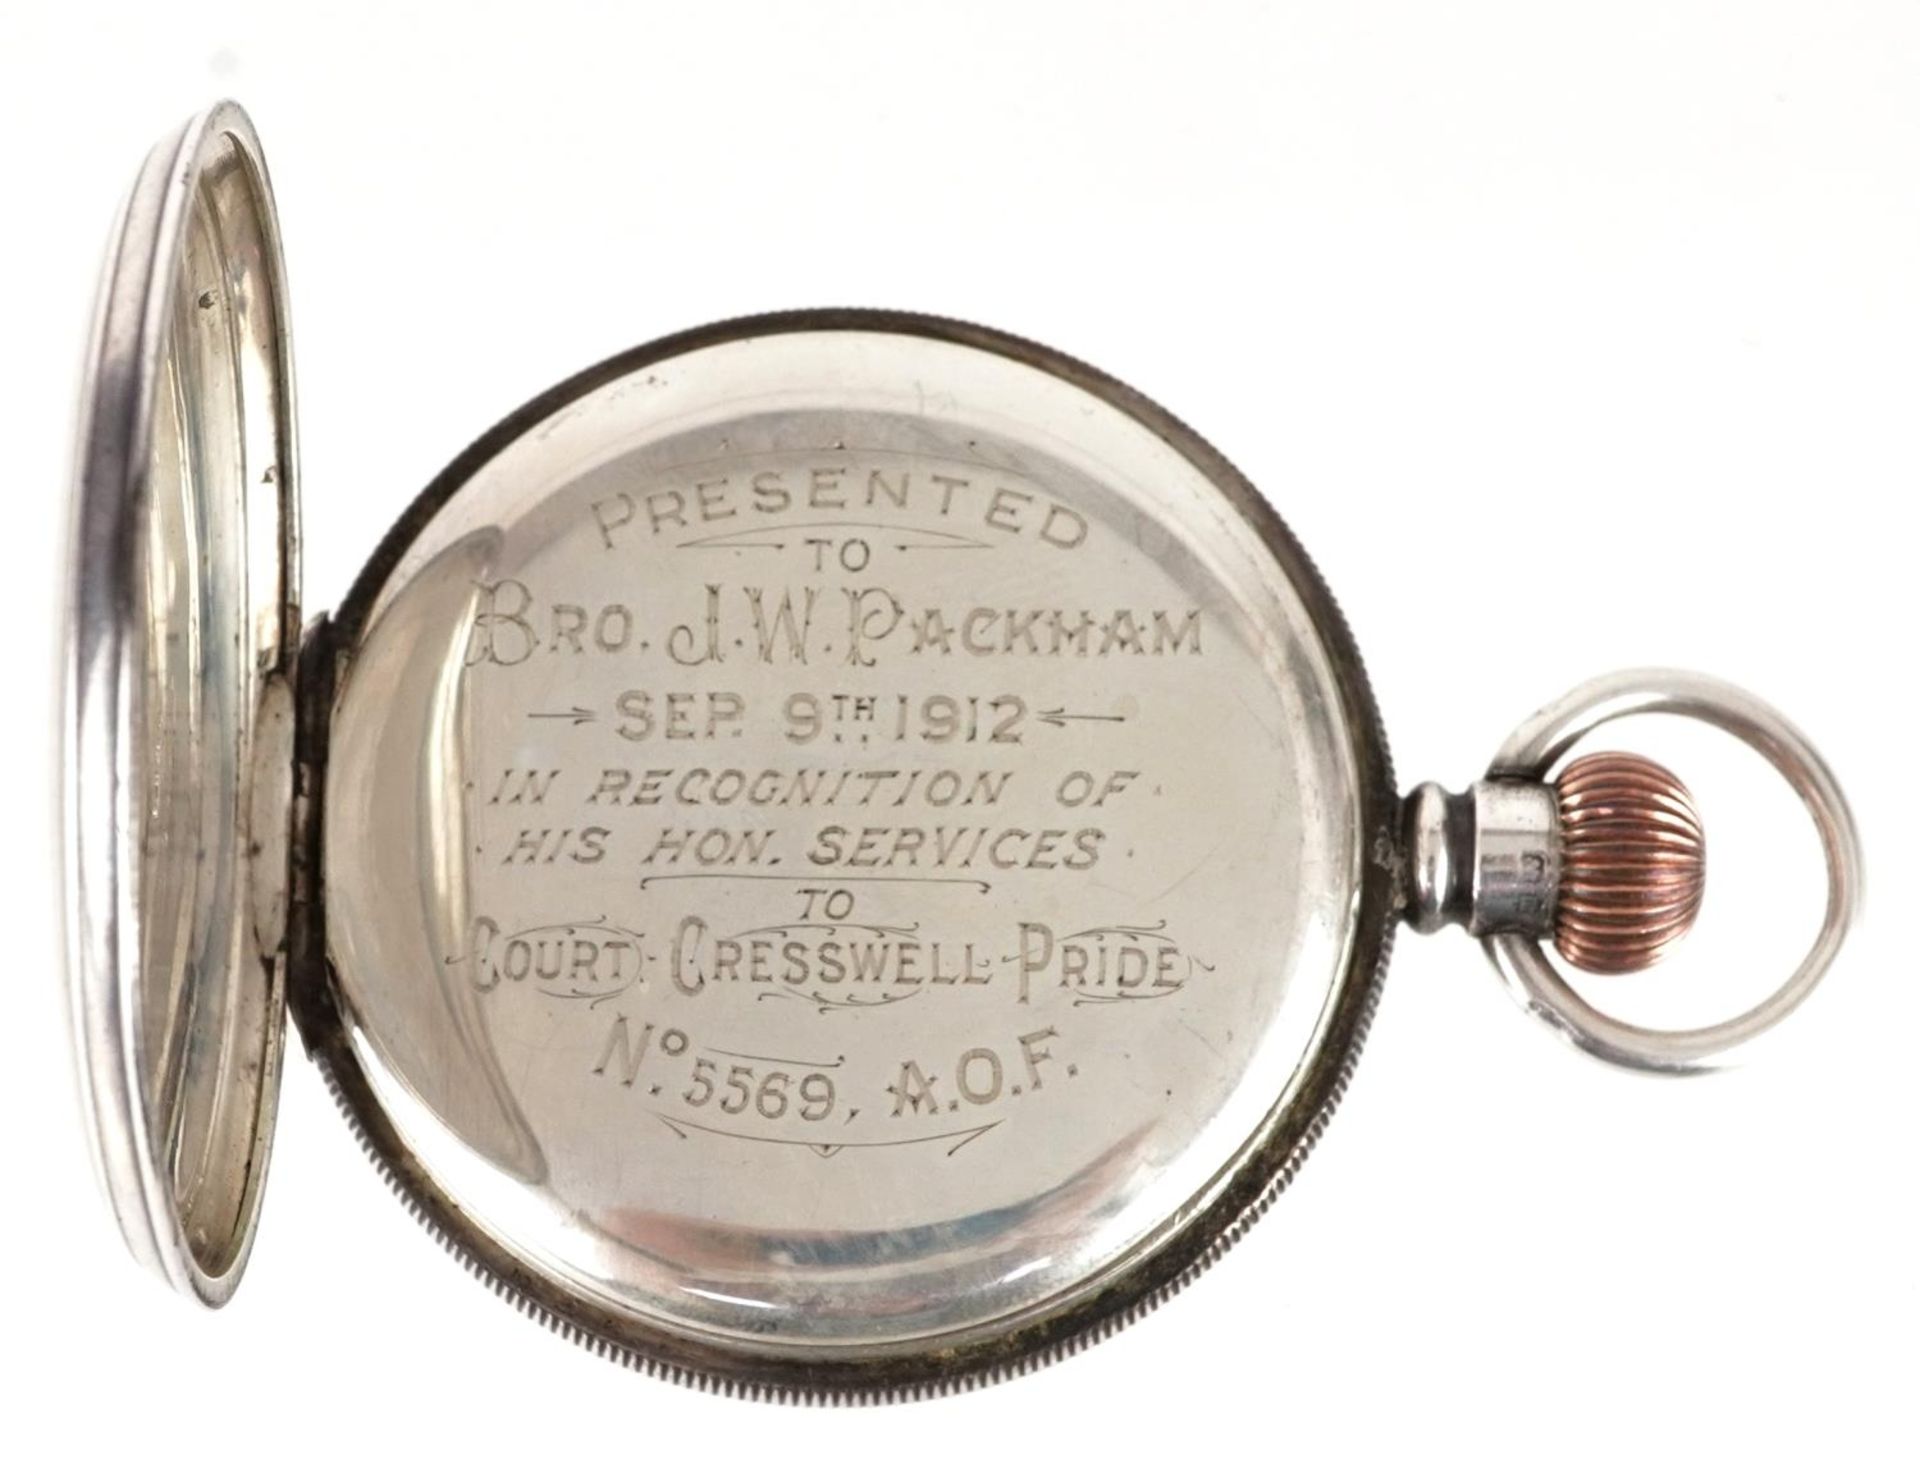 Dennison Watch Case Co, Edwardian gentlemen's silver open face pocket watch, Birmingham 1911, the - Image 3 of 6